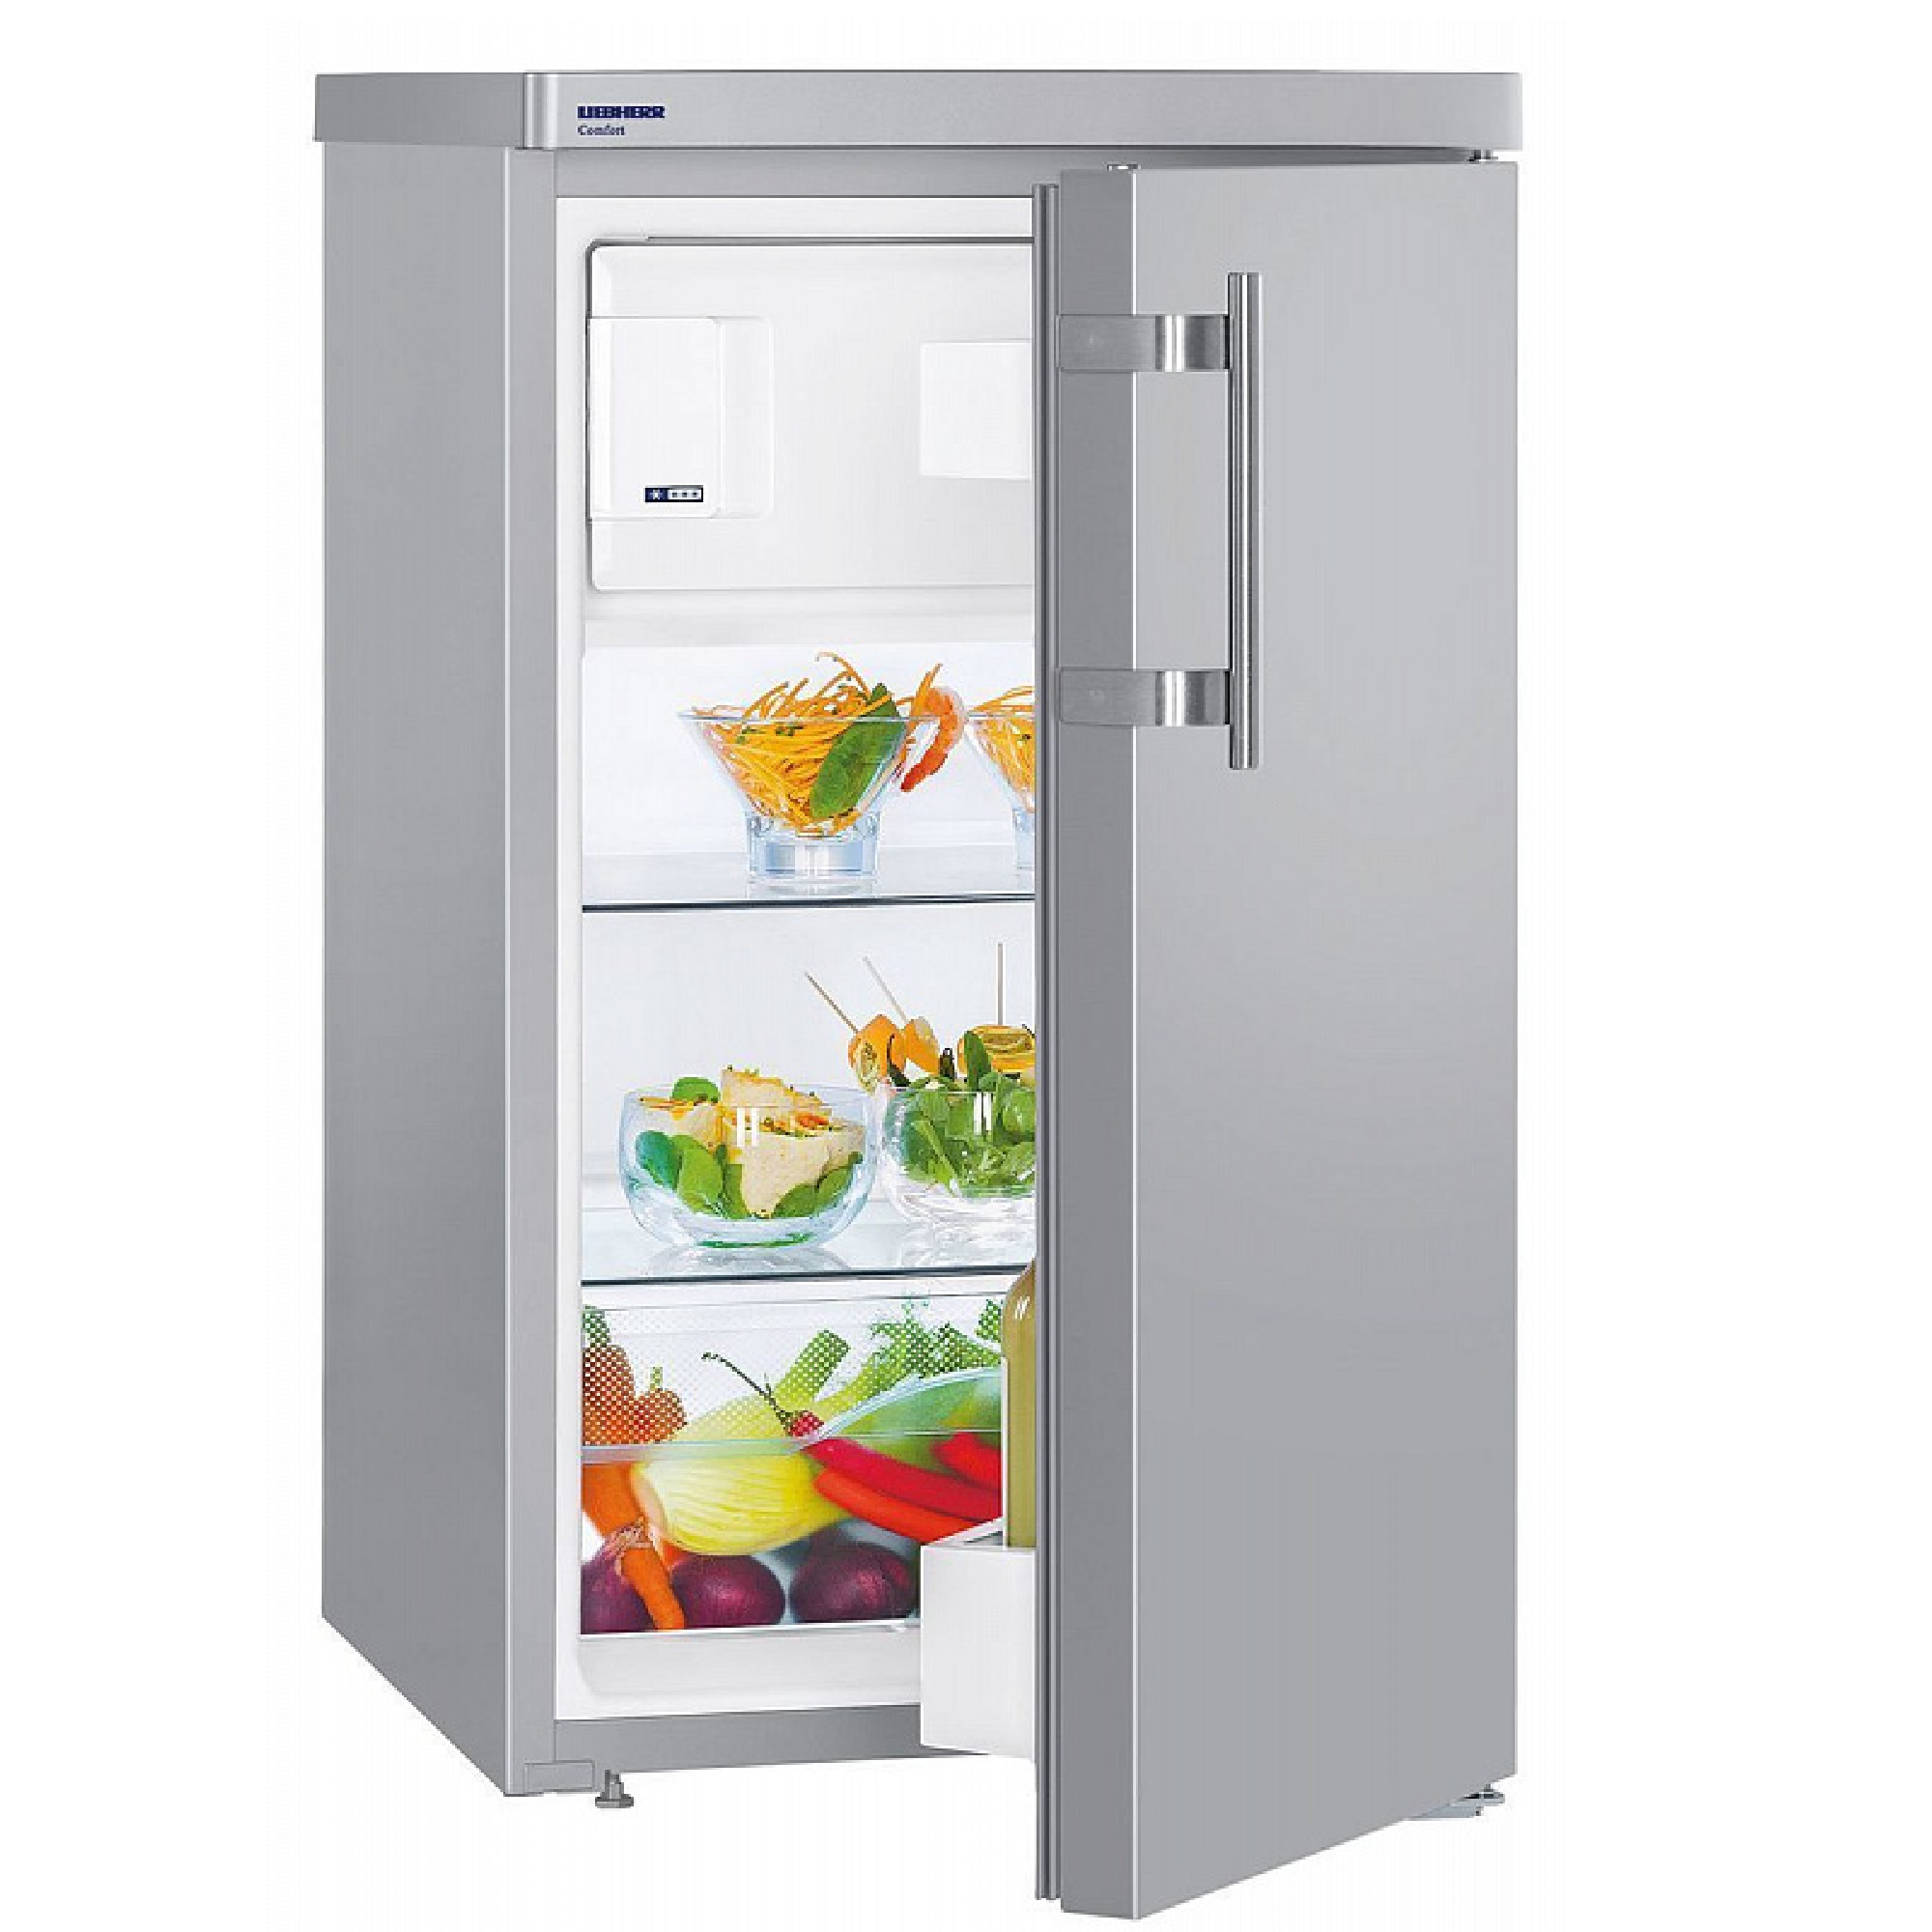 Купить холодильник в алматы. Однокамерный холодильник Liebherr TSL 1414. Холодильник Liebherr TSL 1414 Comfort. Холодильник Либхер однокамерный с морозилкой. Холодильник Либхер однокамерный с морозилкой 140.